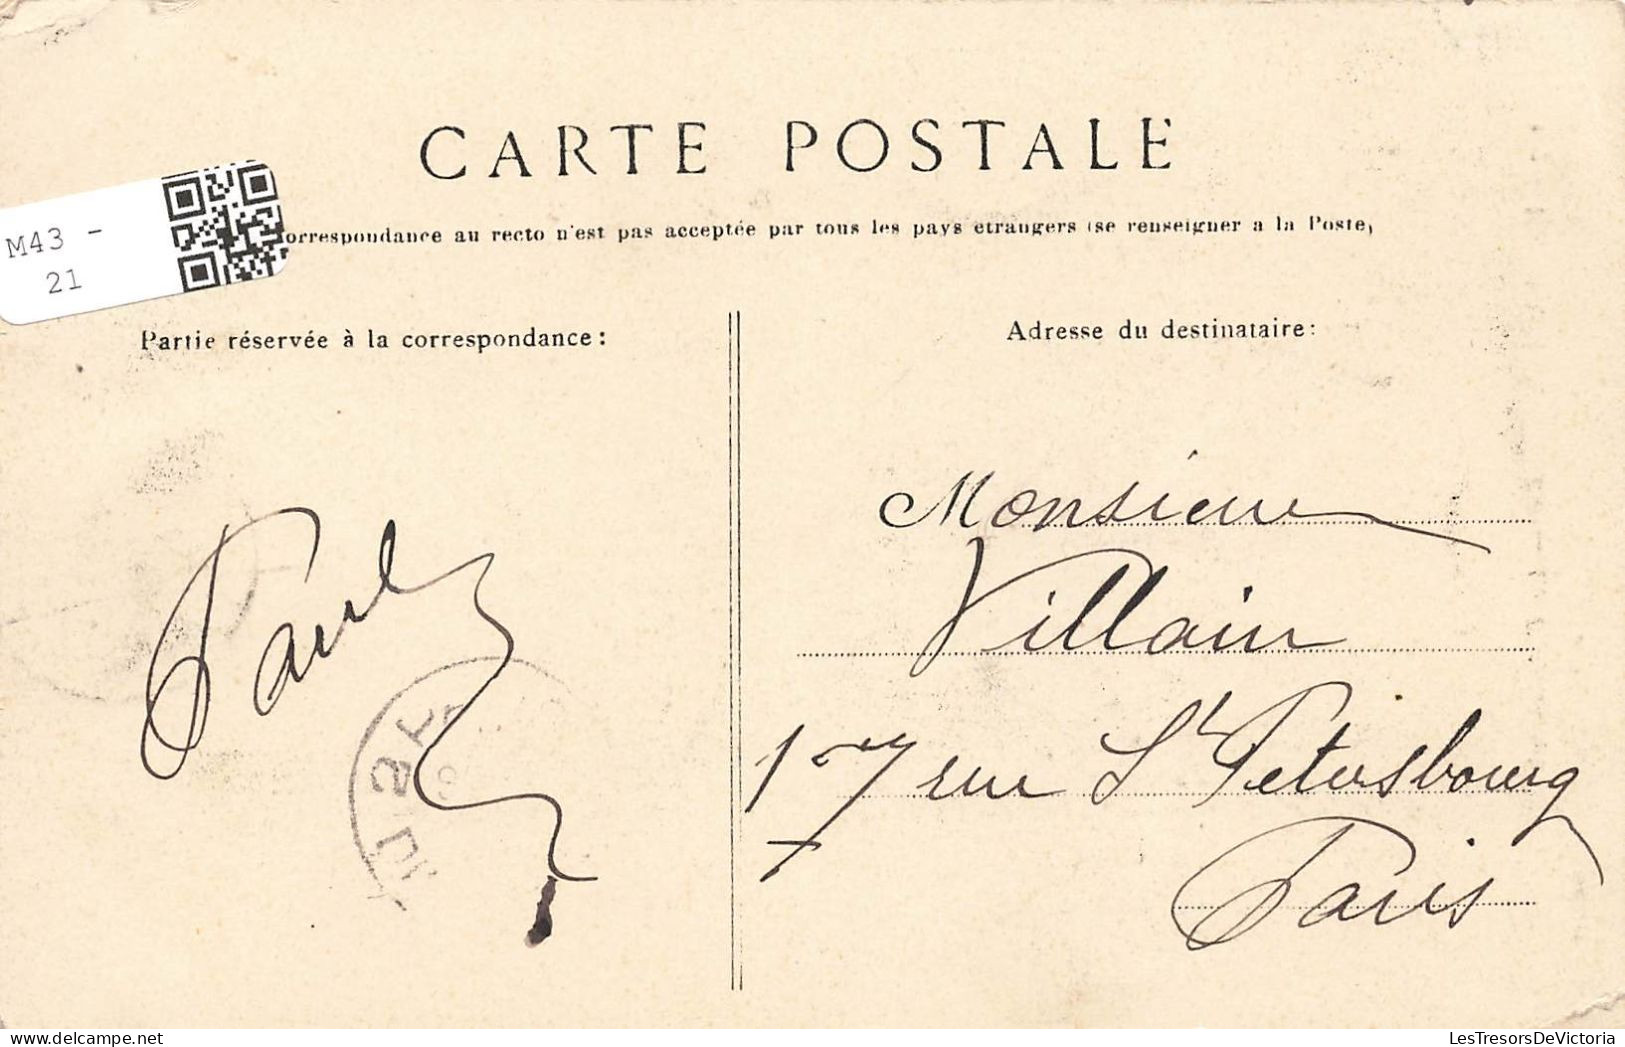 FRANCE - Pontarion - Vue Sur Le Côté Est Du Château - Carte Postale Ancienne - Pontarion